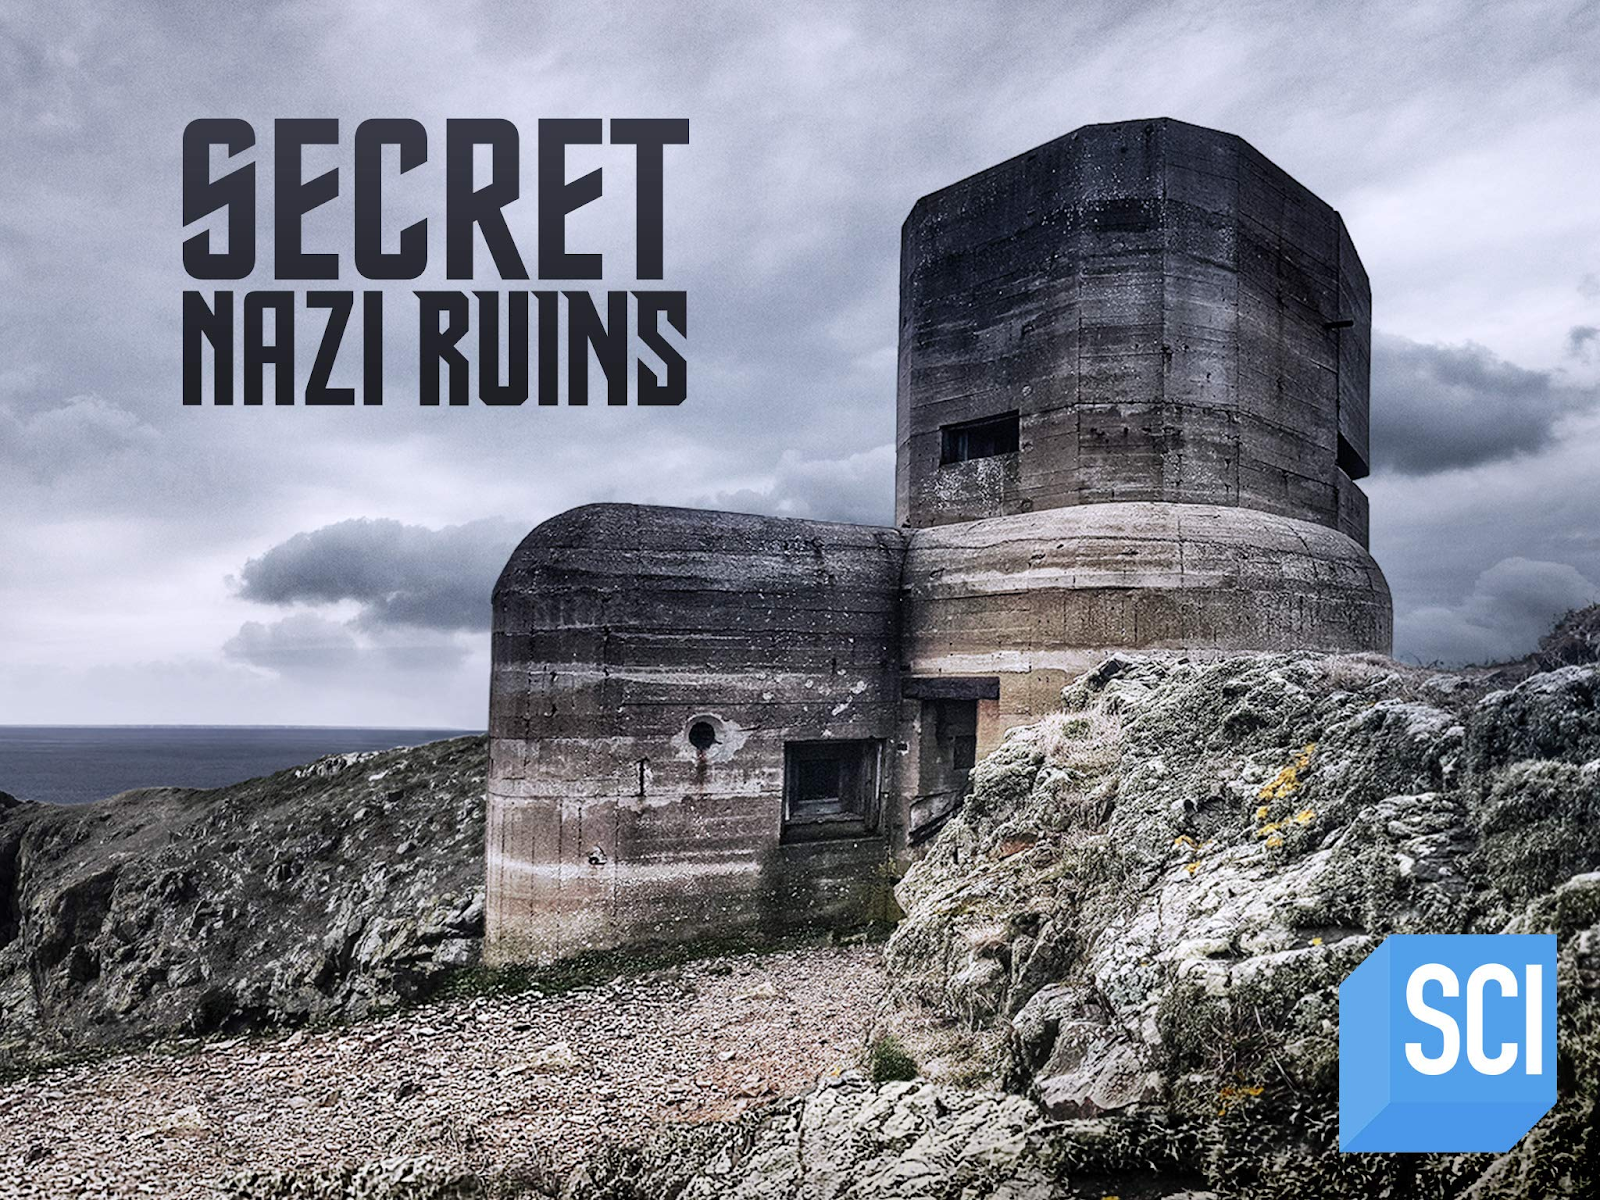 Secret Nazi Ruins - Top Science Channel Shows 